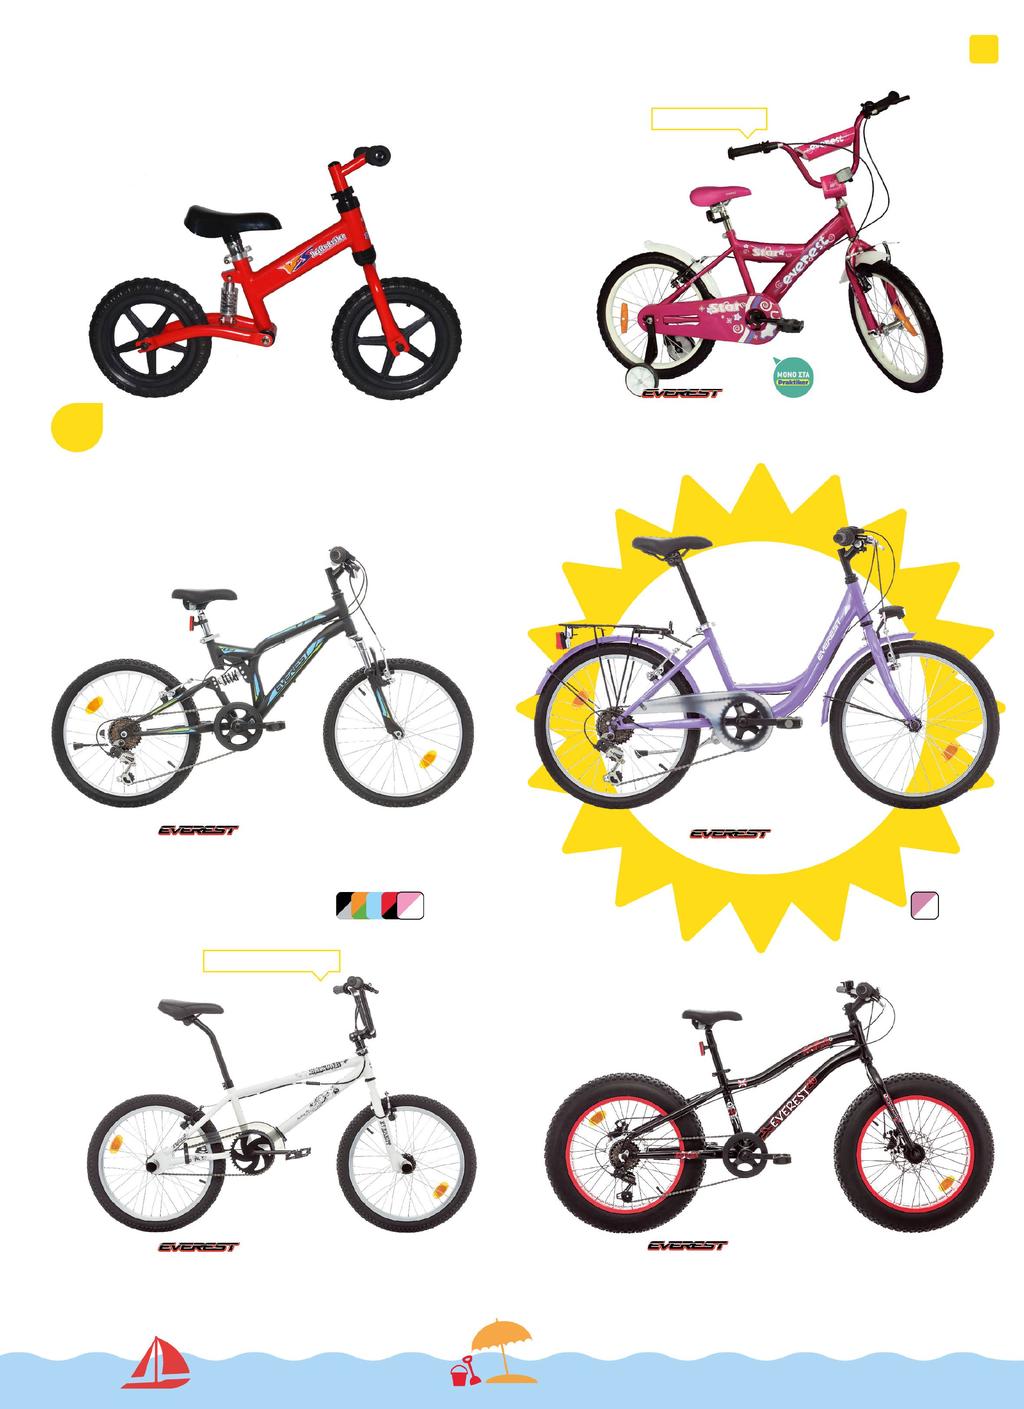 παιδικα ποδηλατα 23 Μέγεθος 12 έως 20 49,99 Ποδηλατάκι ισορροπίας 12 Για ηλικία από 2 έως 5 ετών κωδ.378071 ΑΠΟ 79,90 3,33 Ποδήλατο παιδικό STAR για κορίτσι Διατίθεται και για αγόρια Σε διάφορα κωδ.